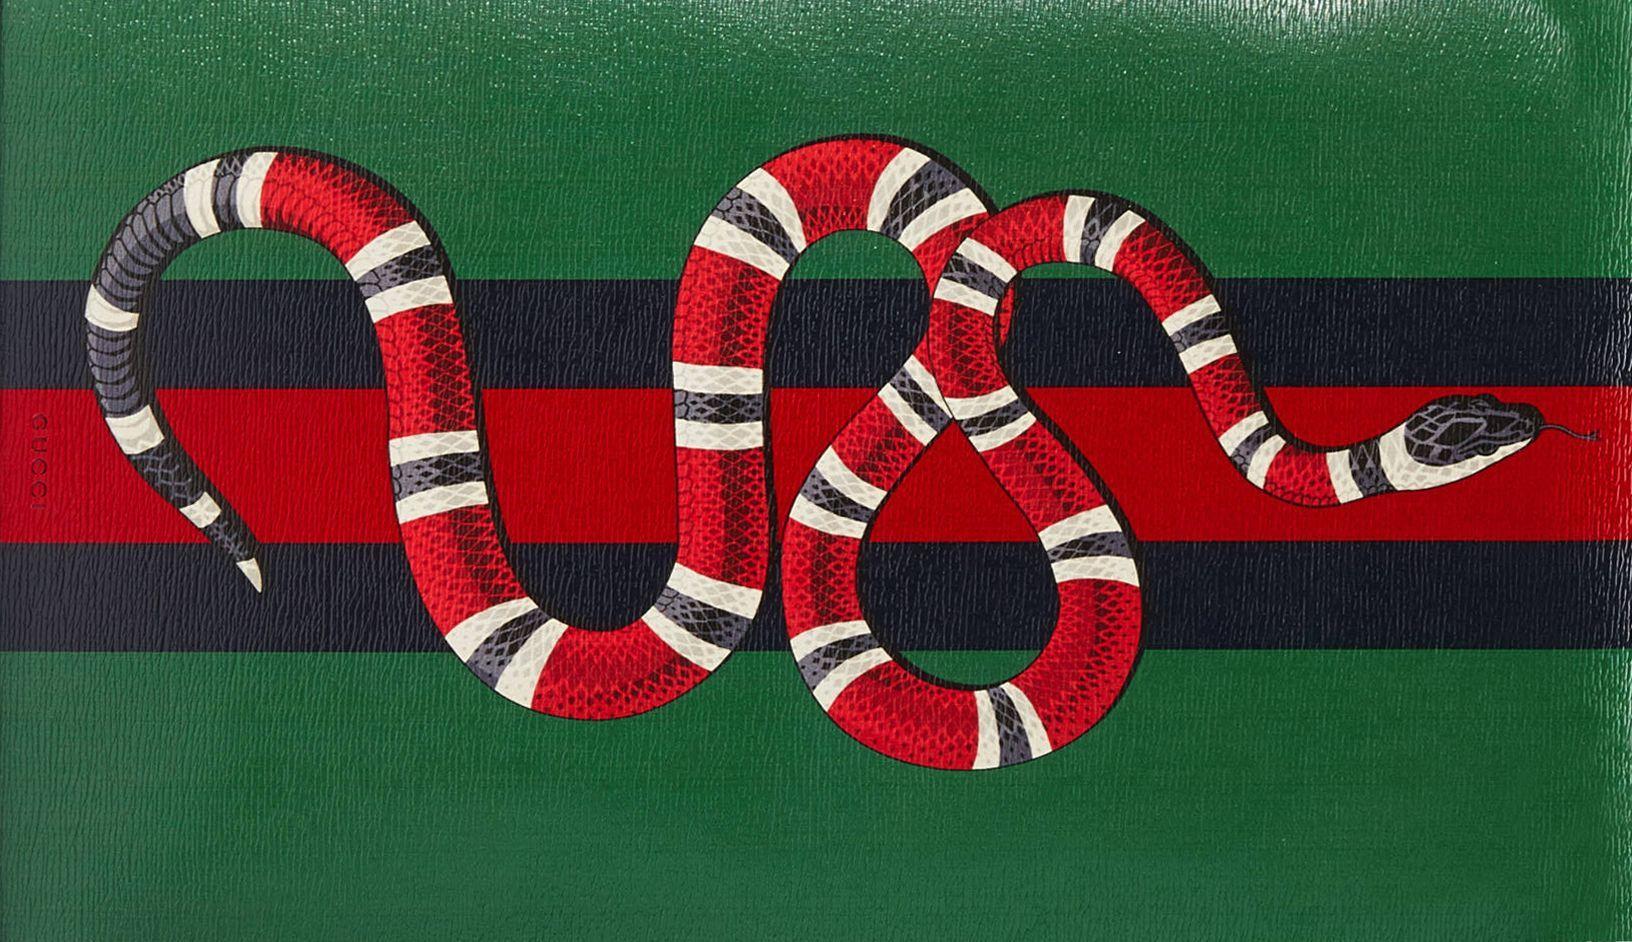 Fond Decran Gucci Serpent - Fond d'écran Wallpapers